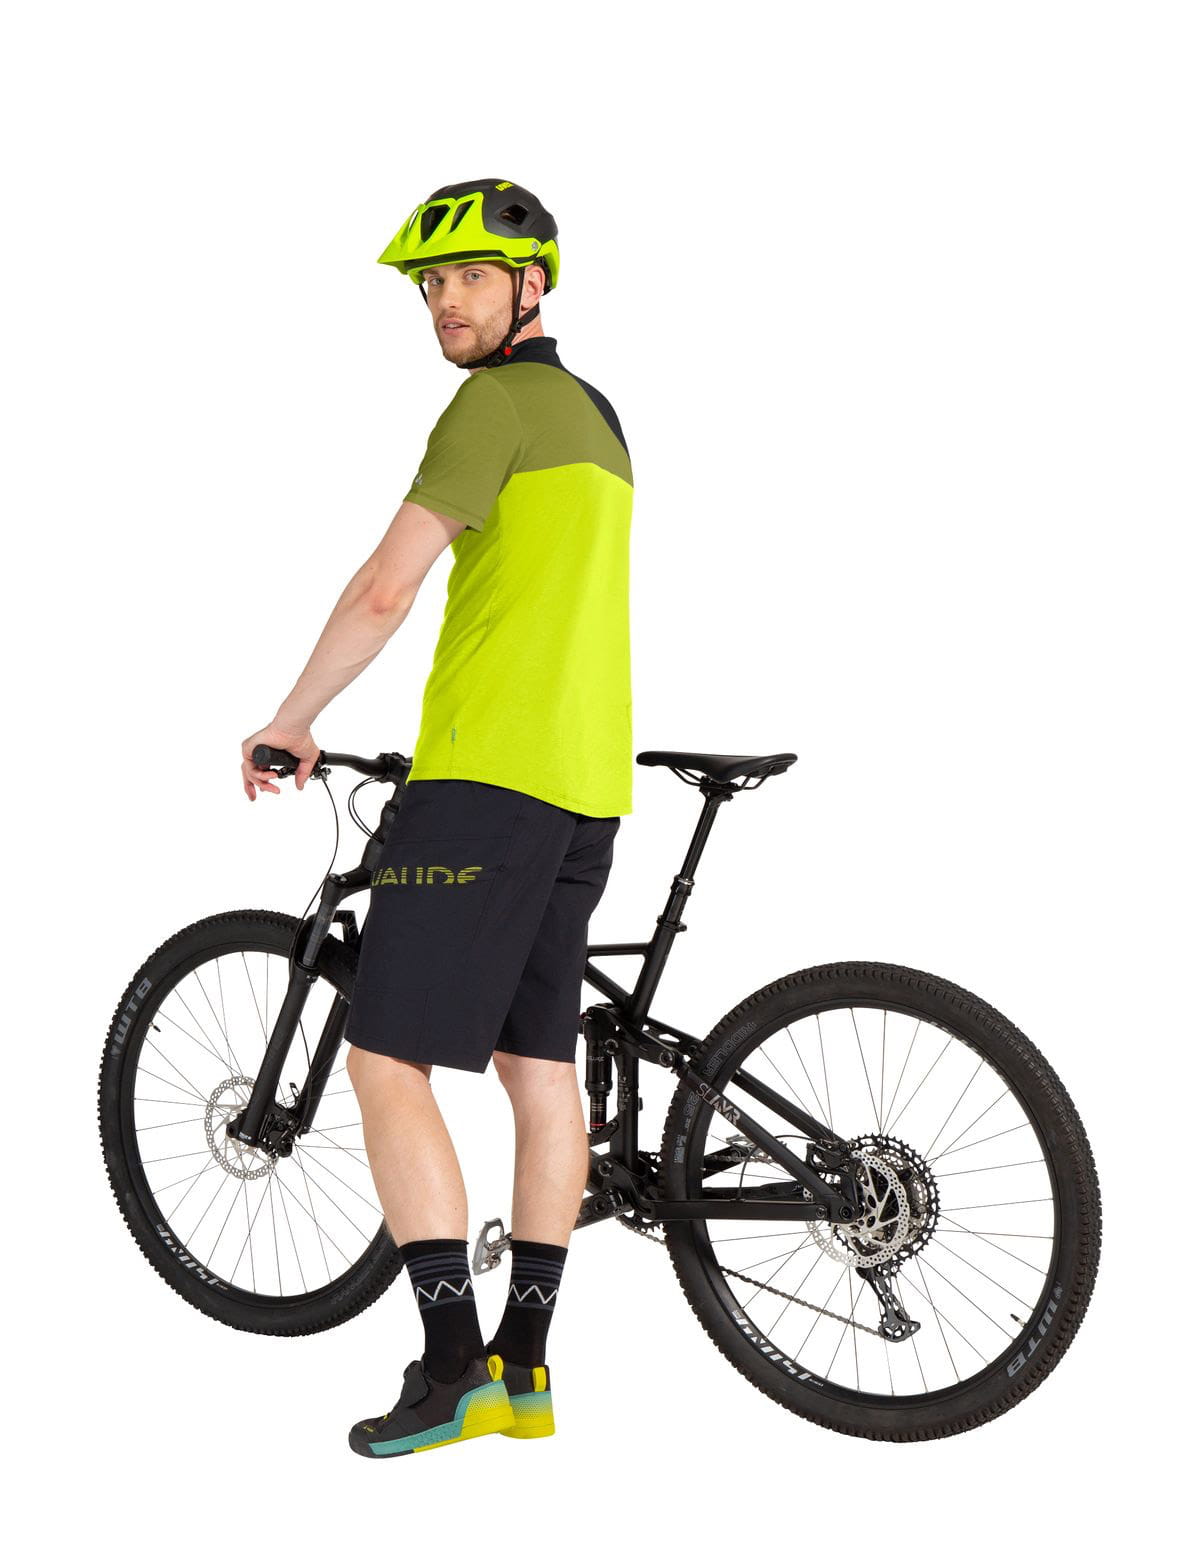 VAUDE Mens Altissimo Shorts III Bike Shorts with herausnehmbarer Innenhose  buy online